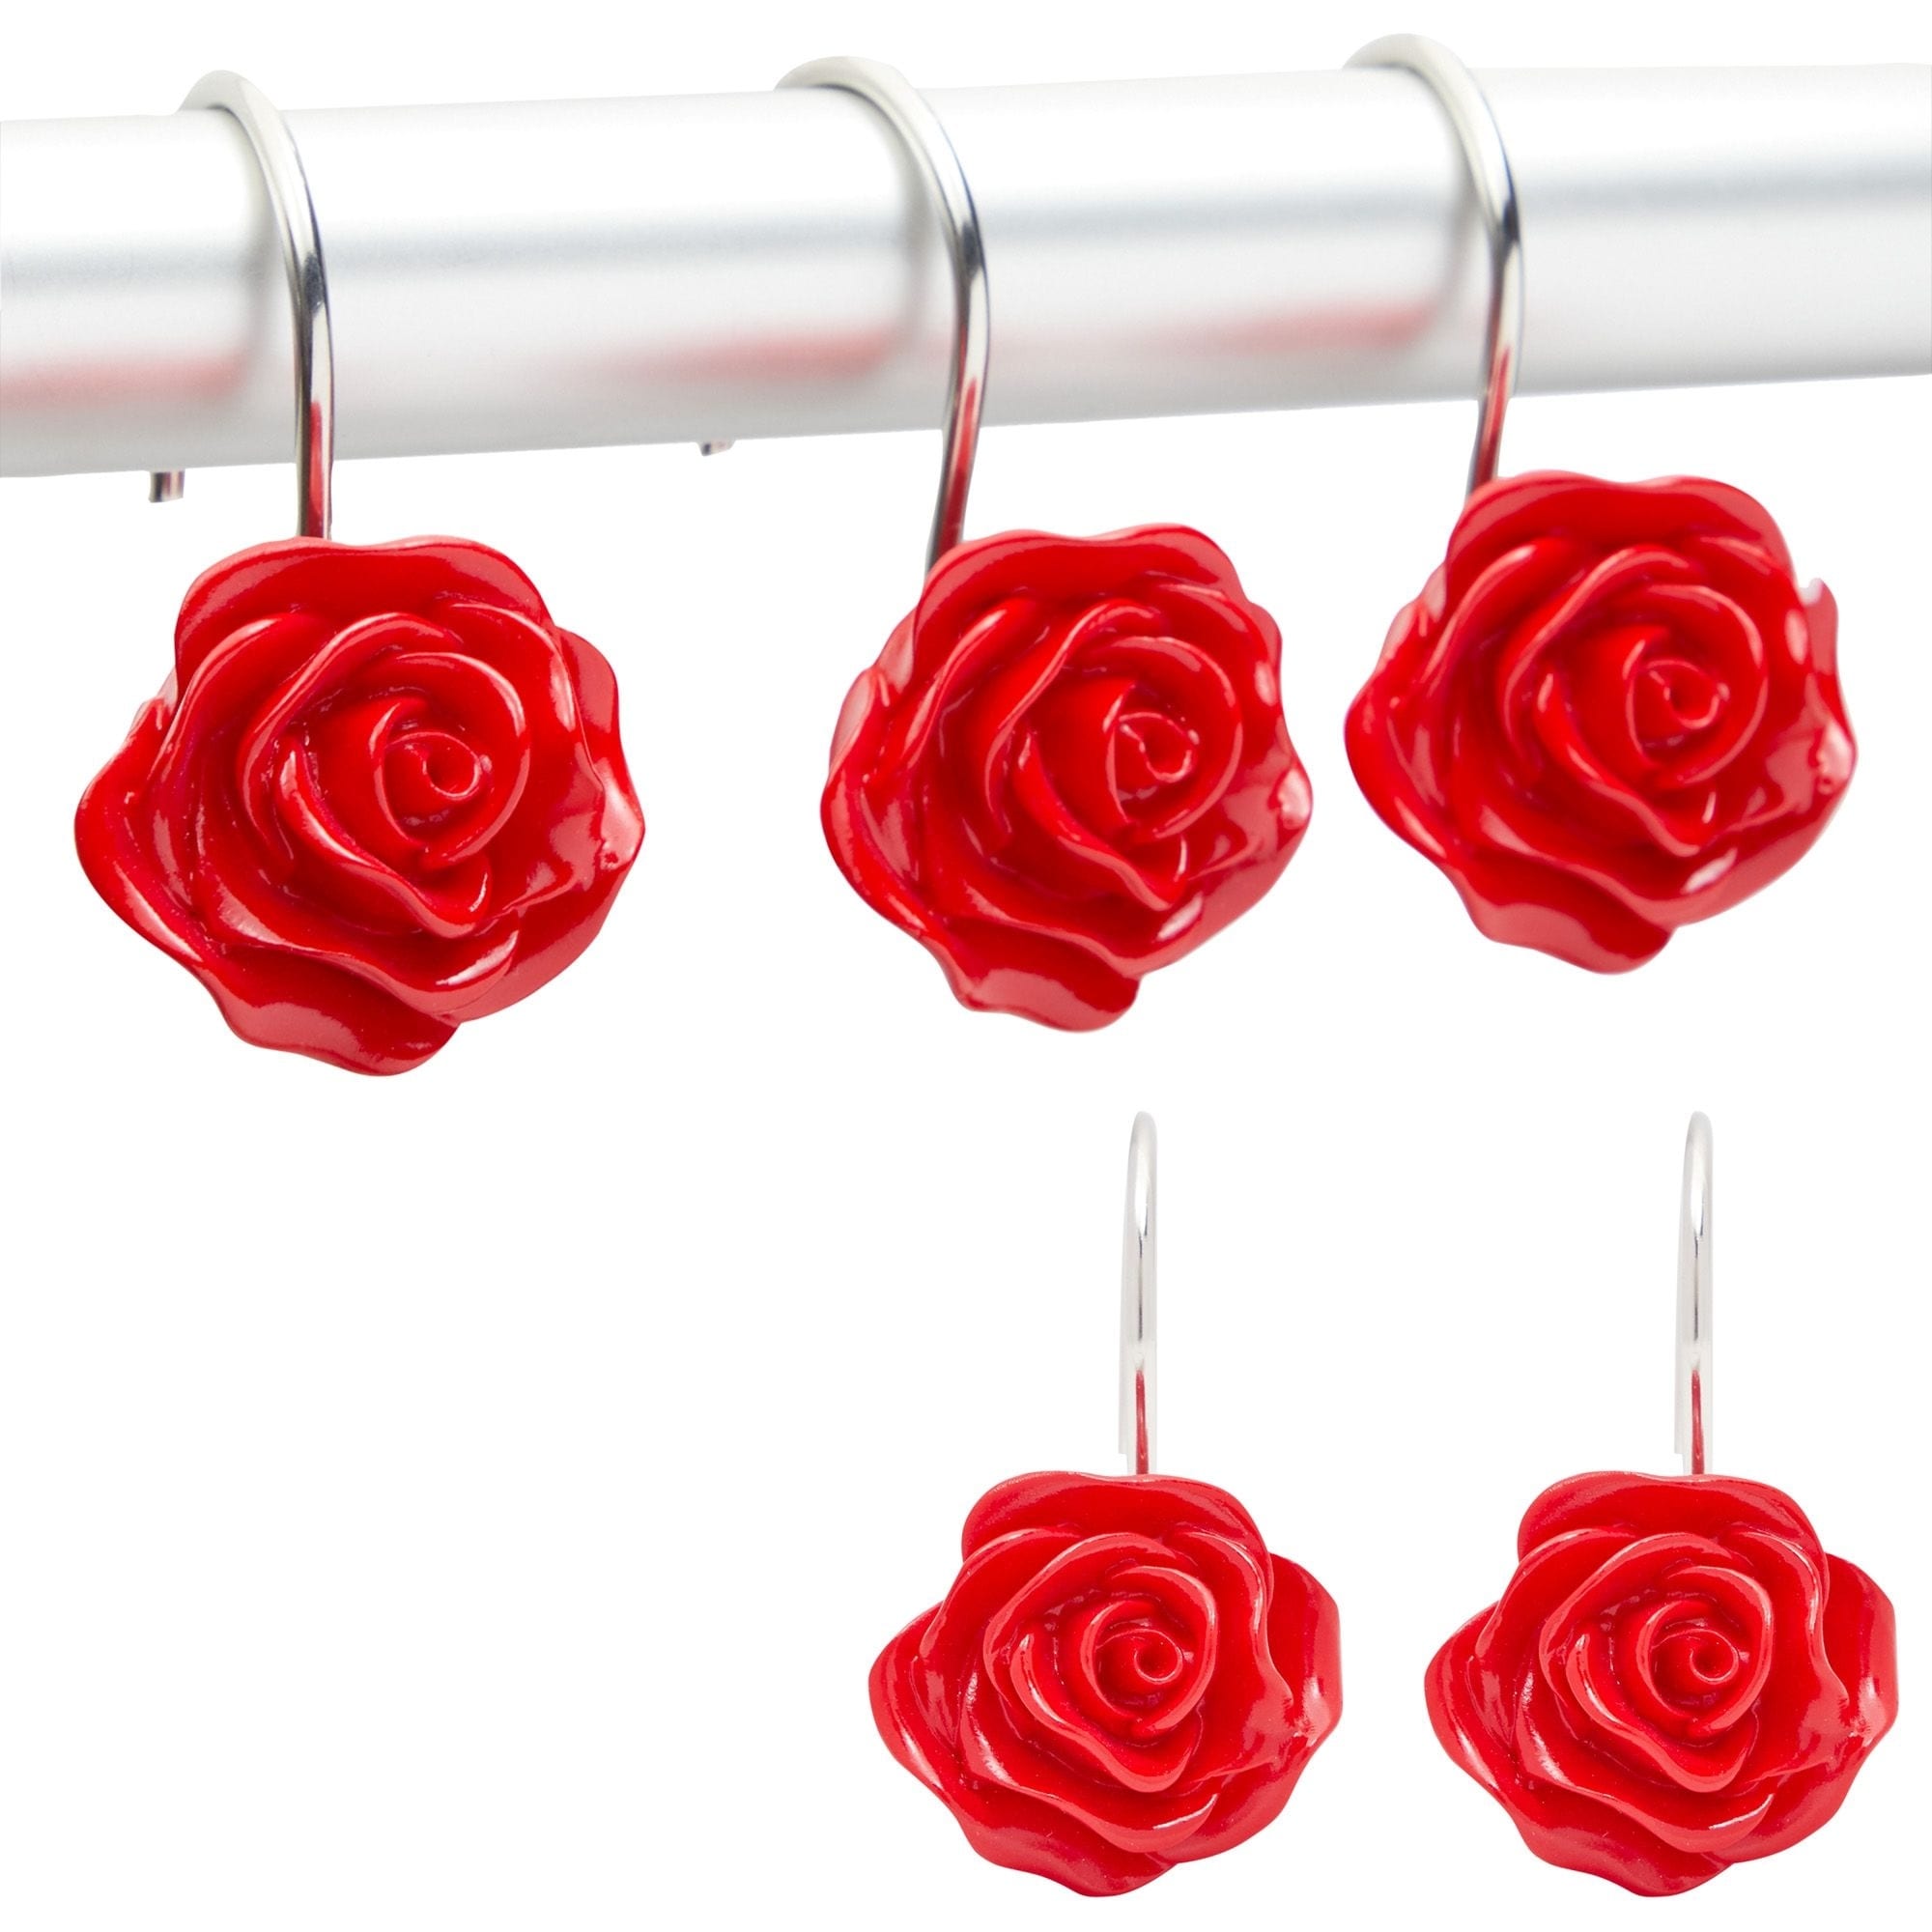 Red Rose Shower Curtain Hooks, Flower Bathroom Decor (Stainless